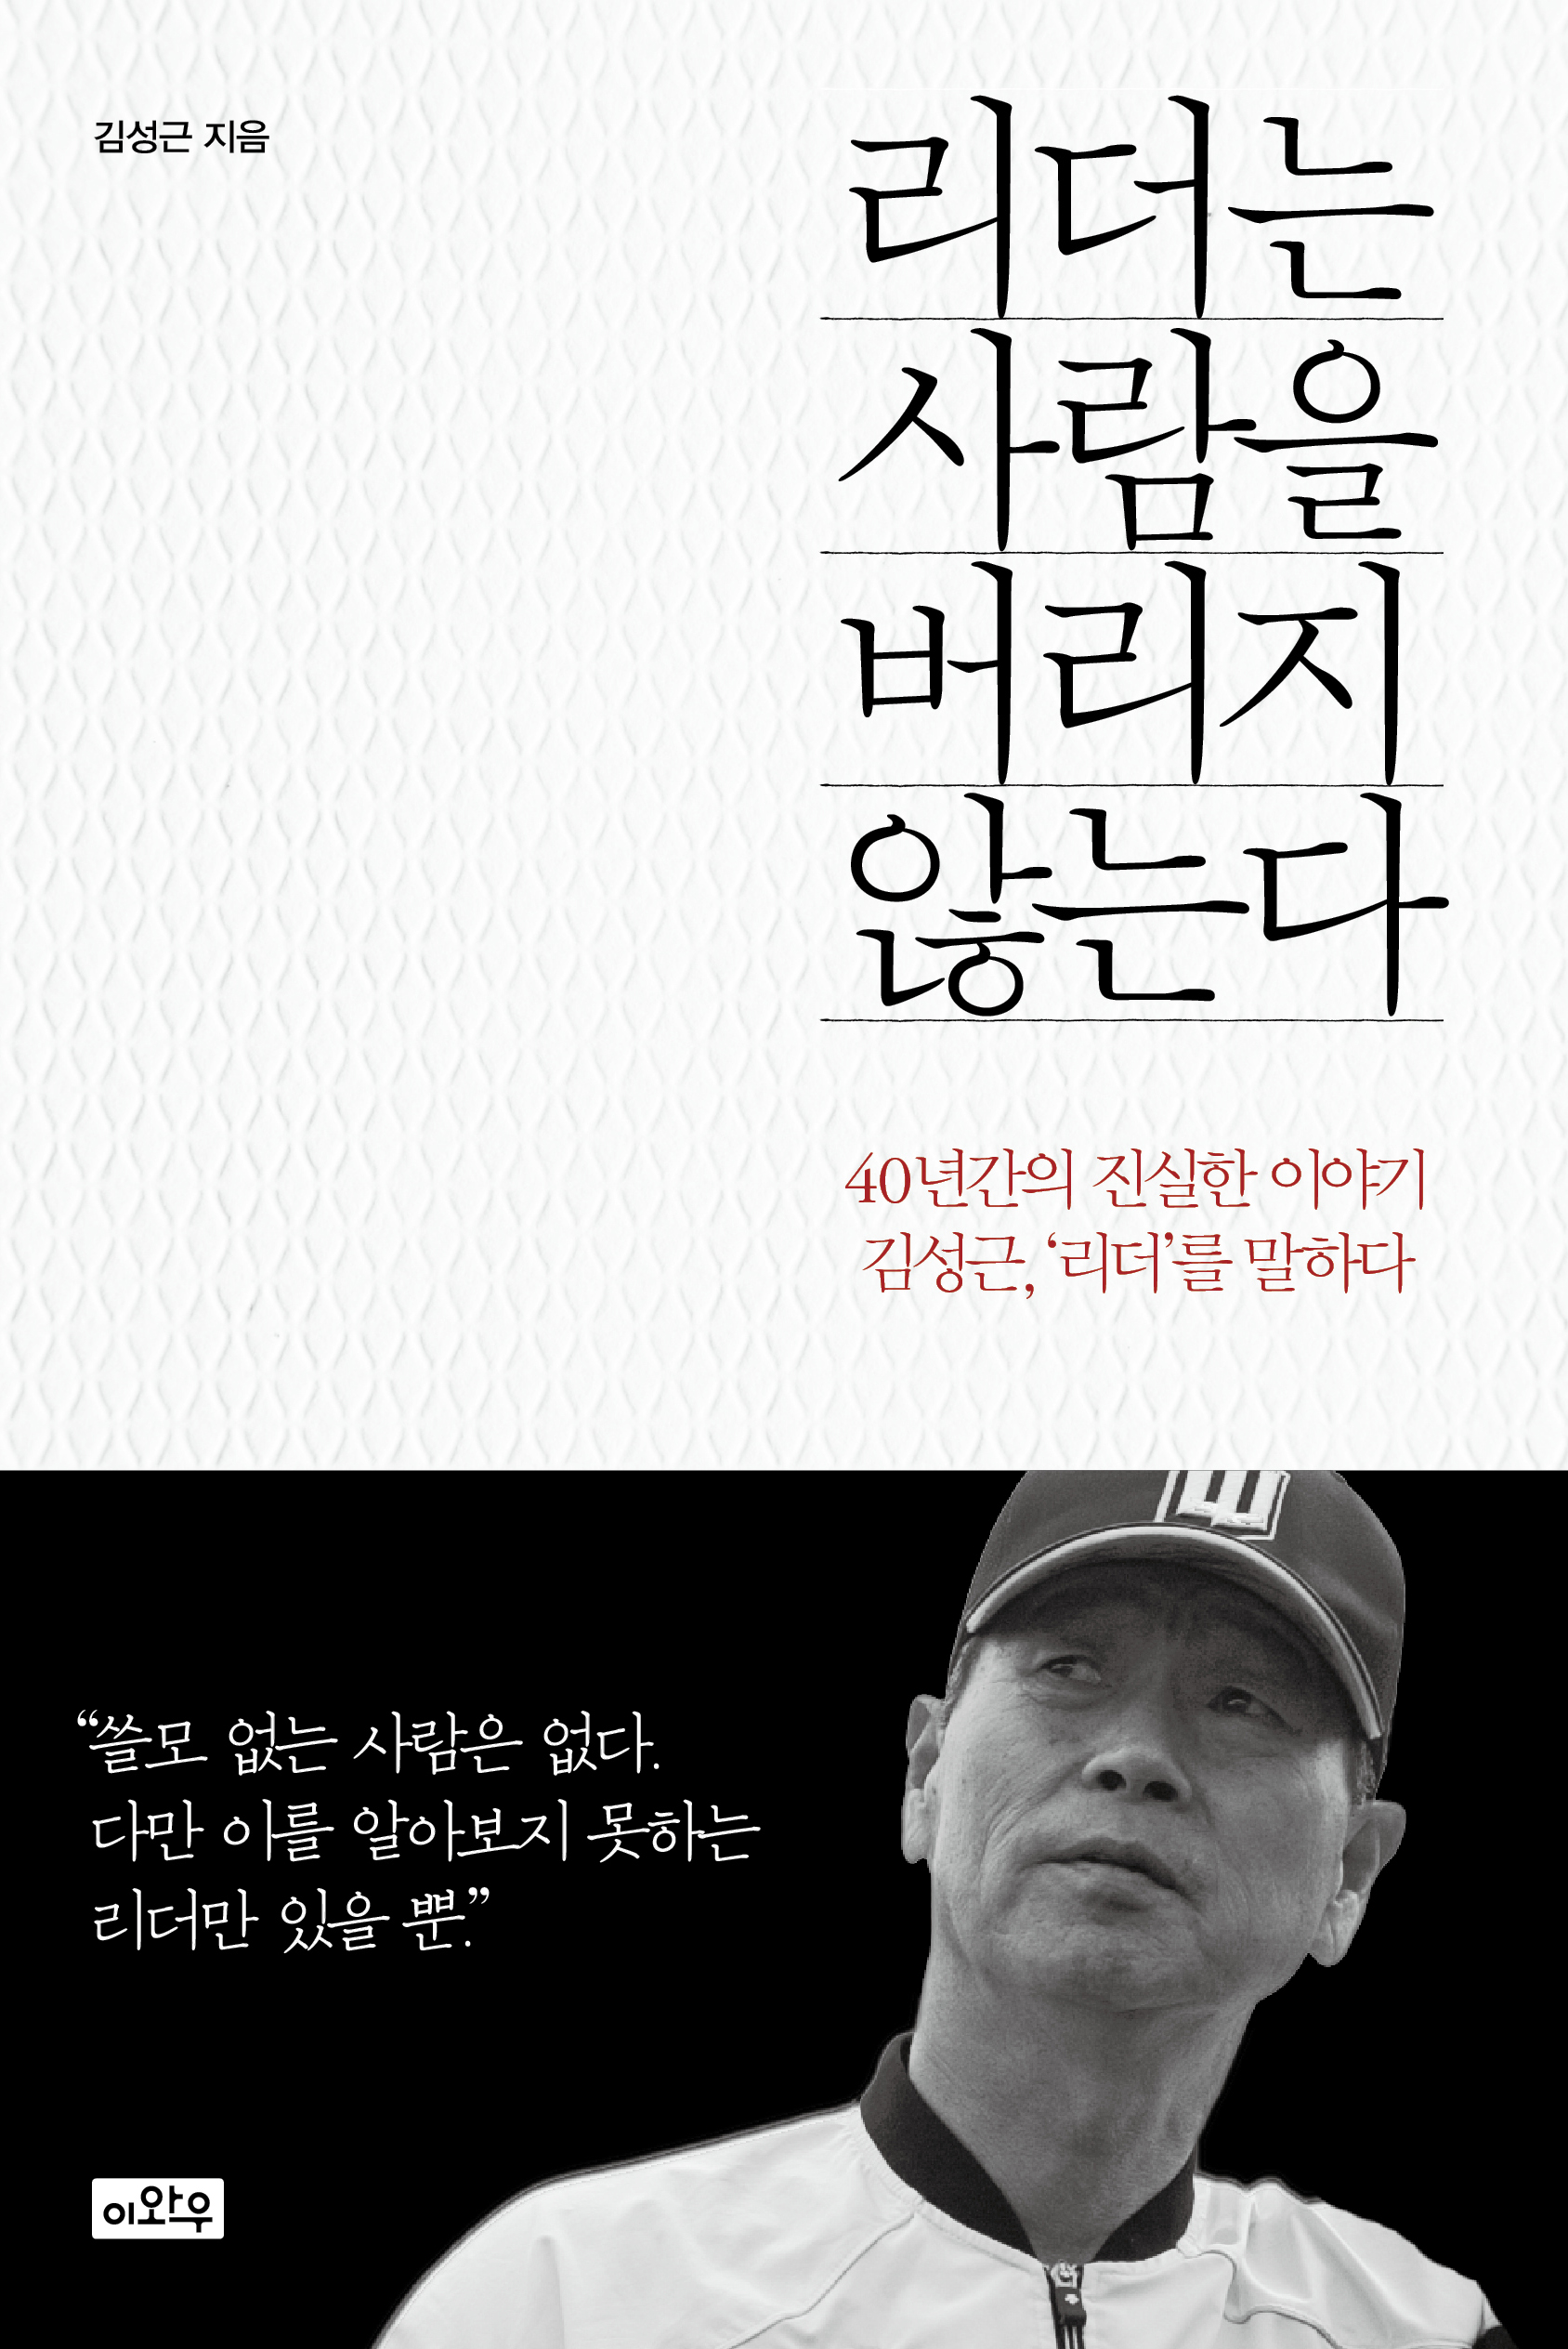 리더는 사람을 버리지 않는다 : 40년간의 진실한 이야기 김성근, '리더'를 말하다